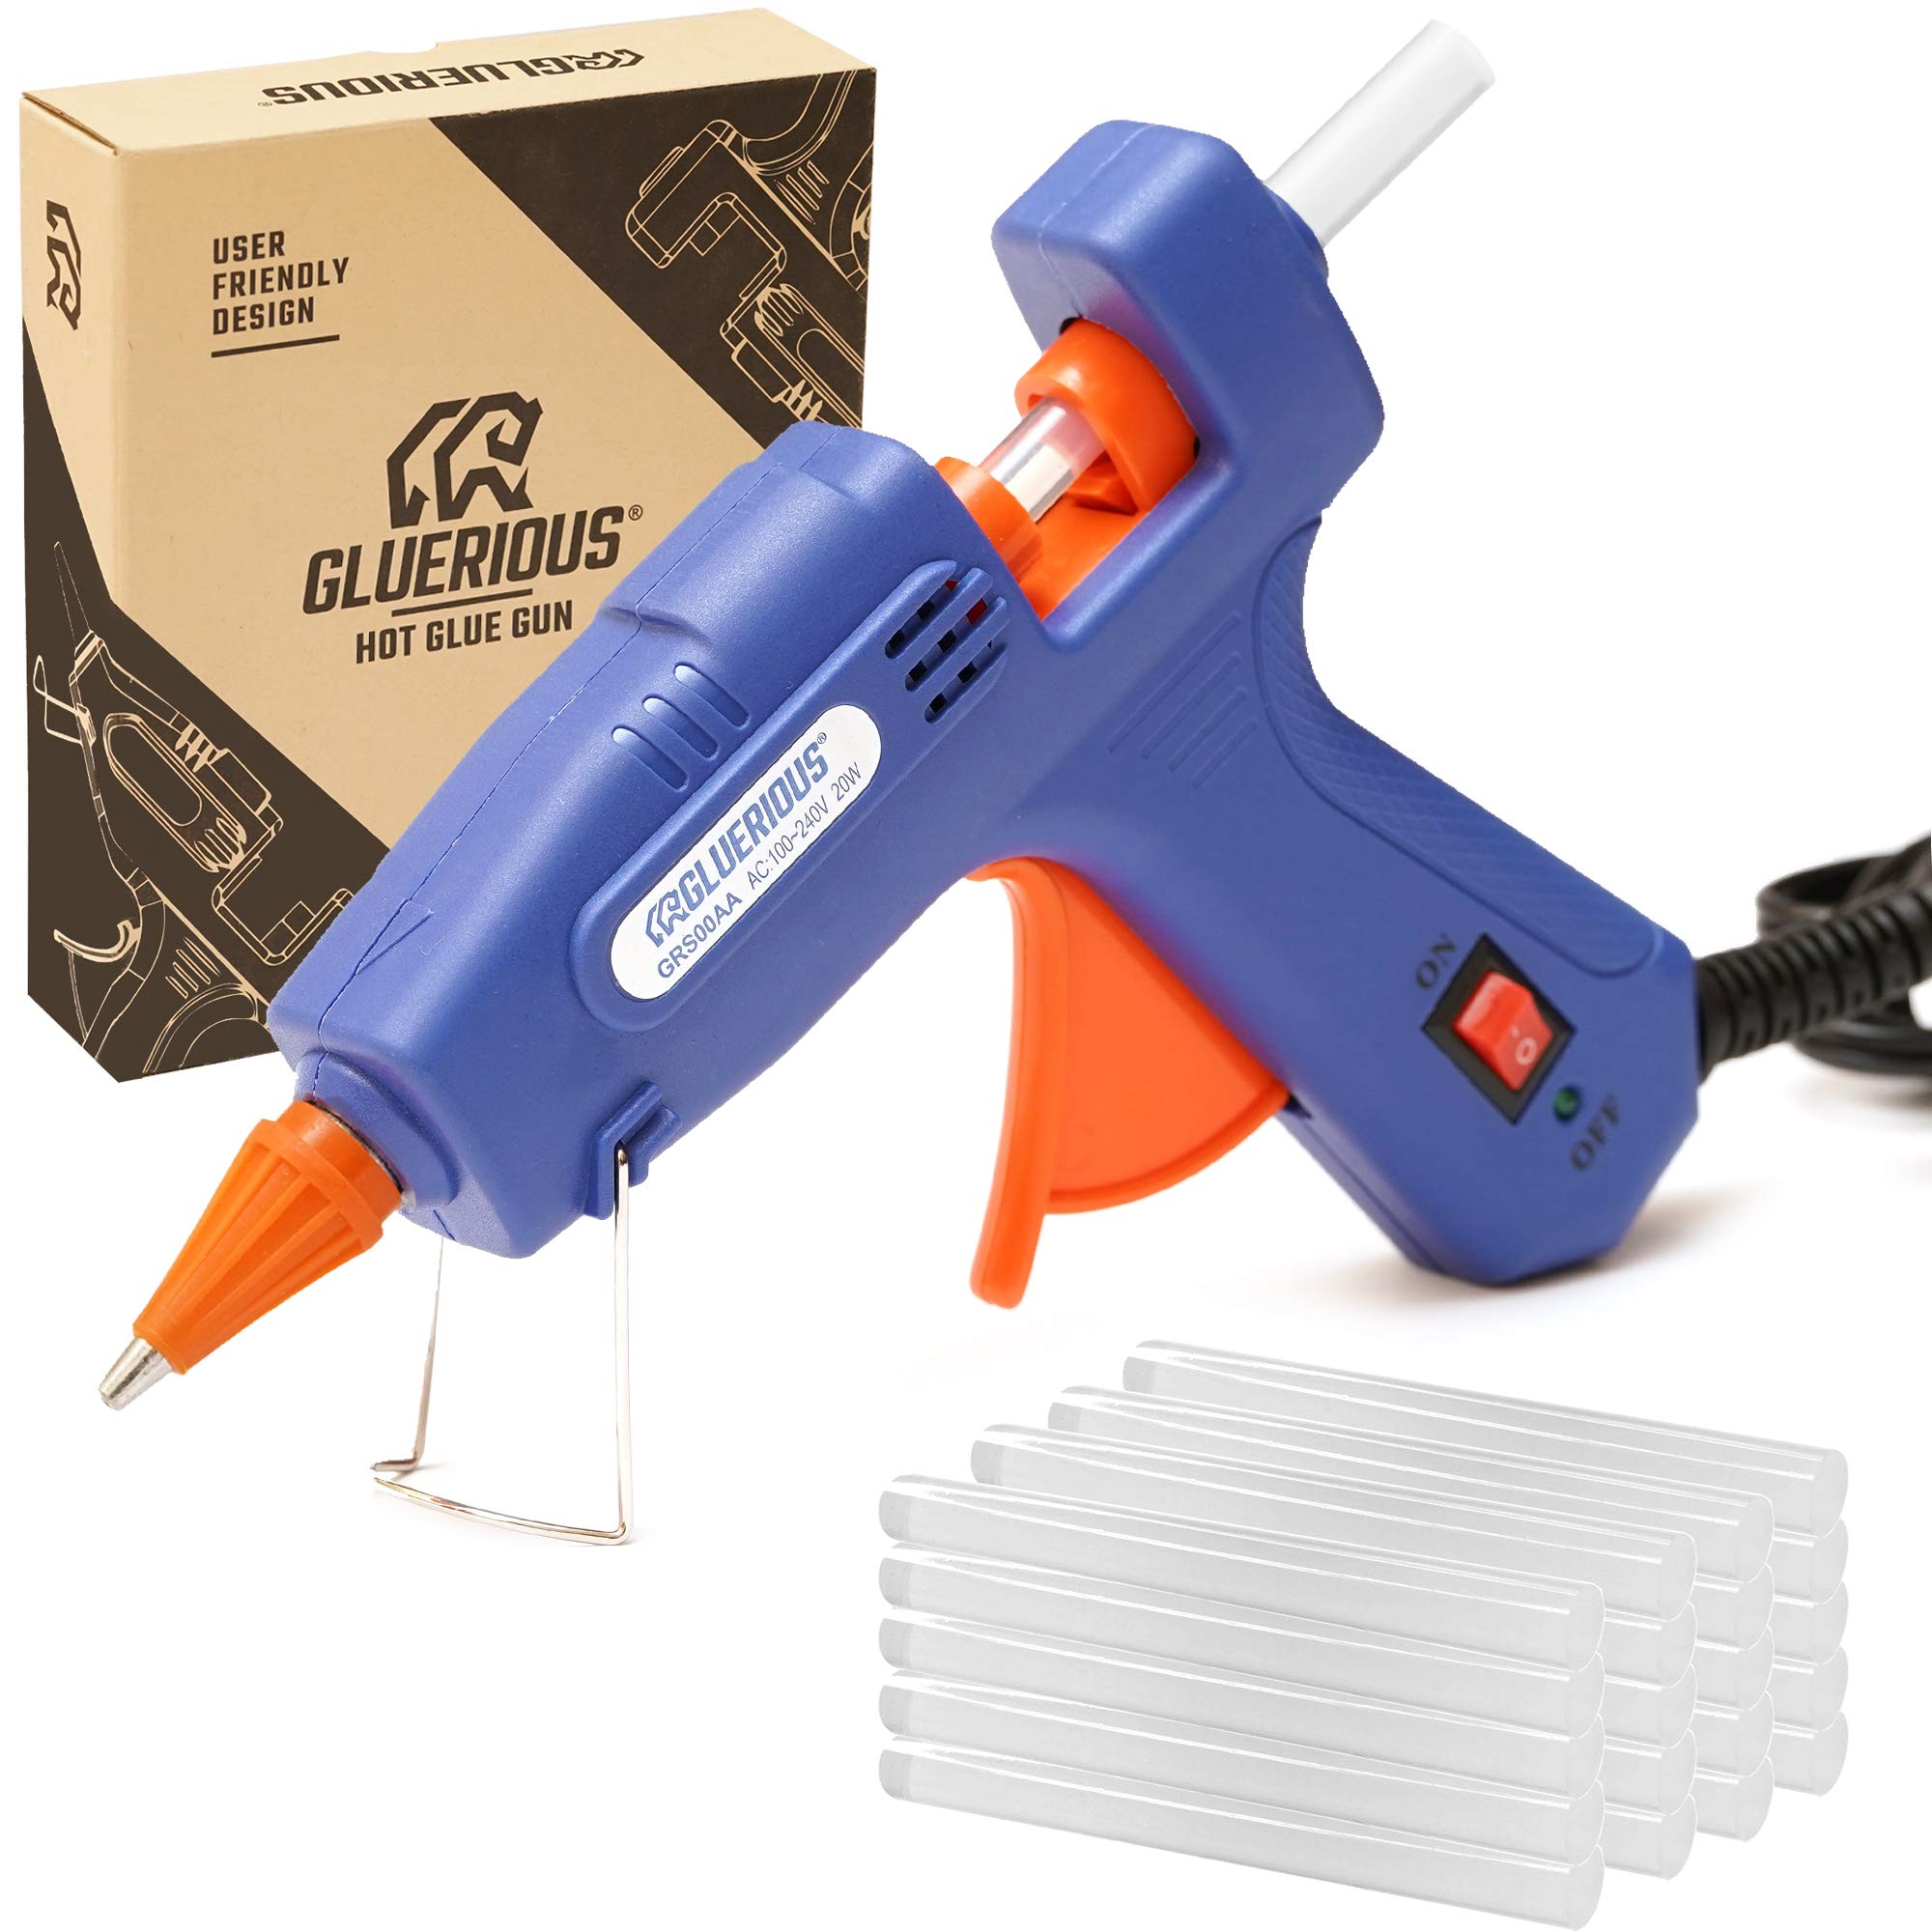 Gluerious Mini Hot Glue Gun with 30 Glue Sticks for Crafts School DIY Arts  Home Quick Repairs 20W Blue